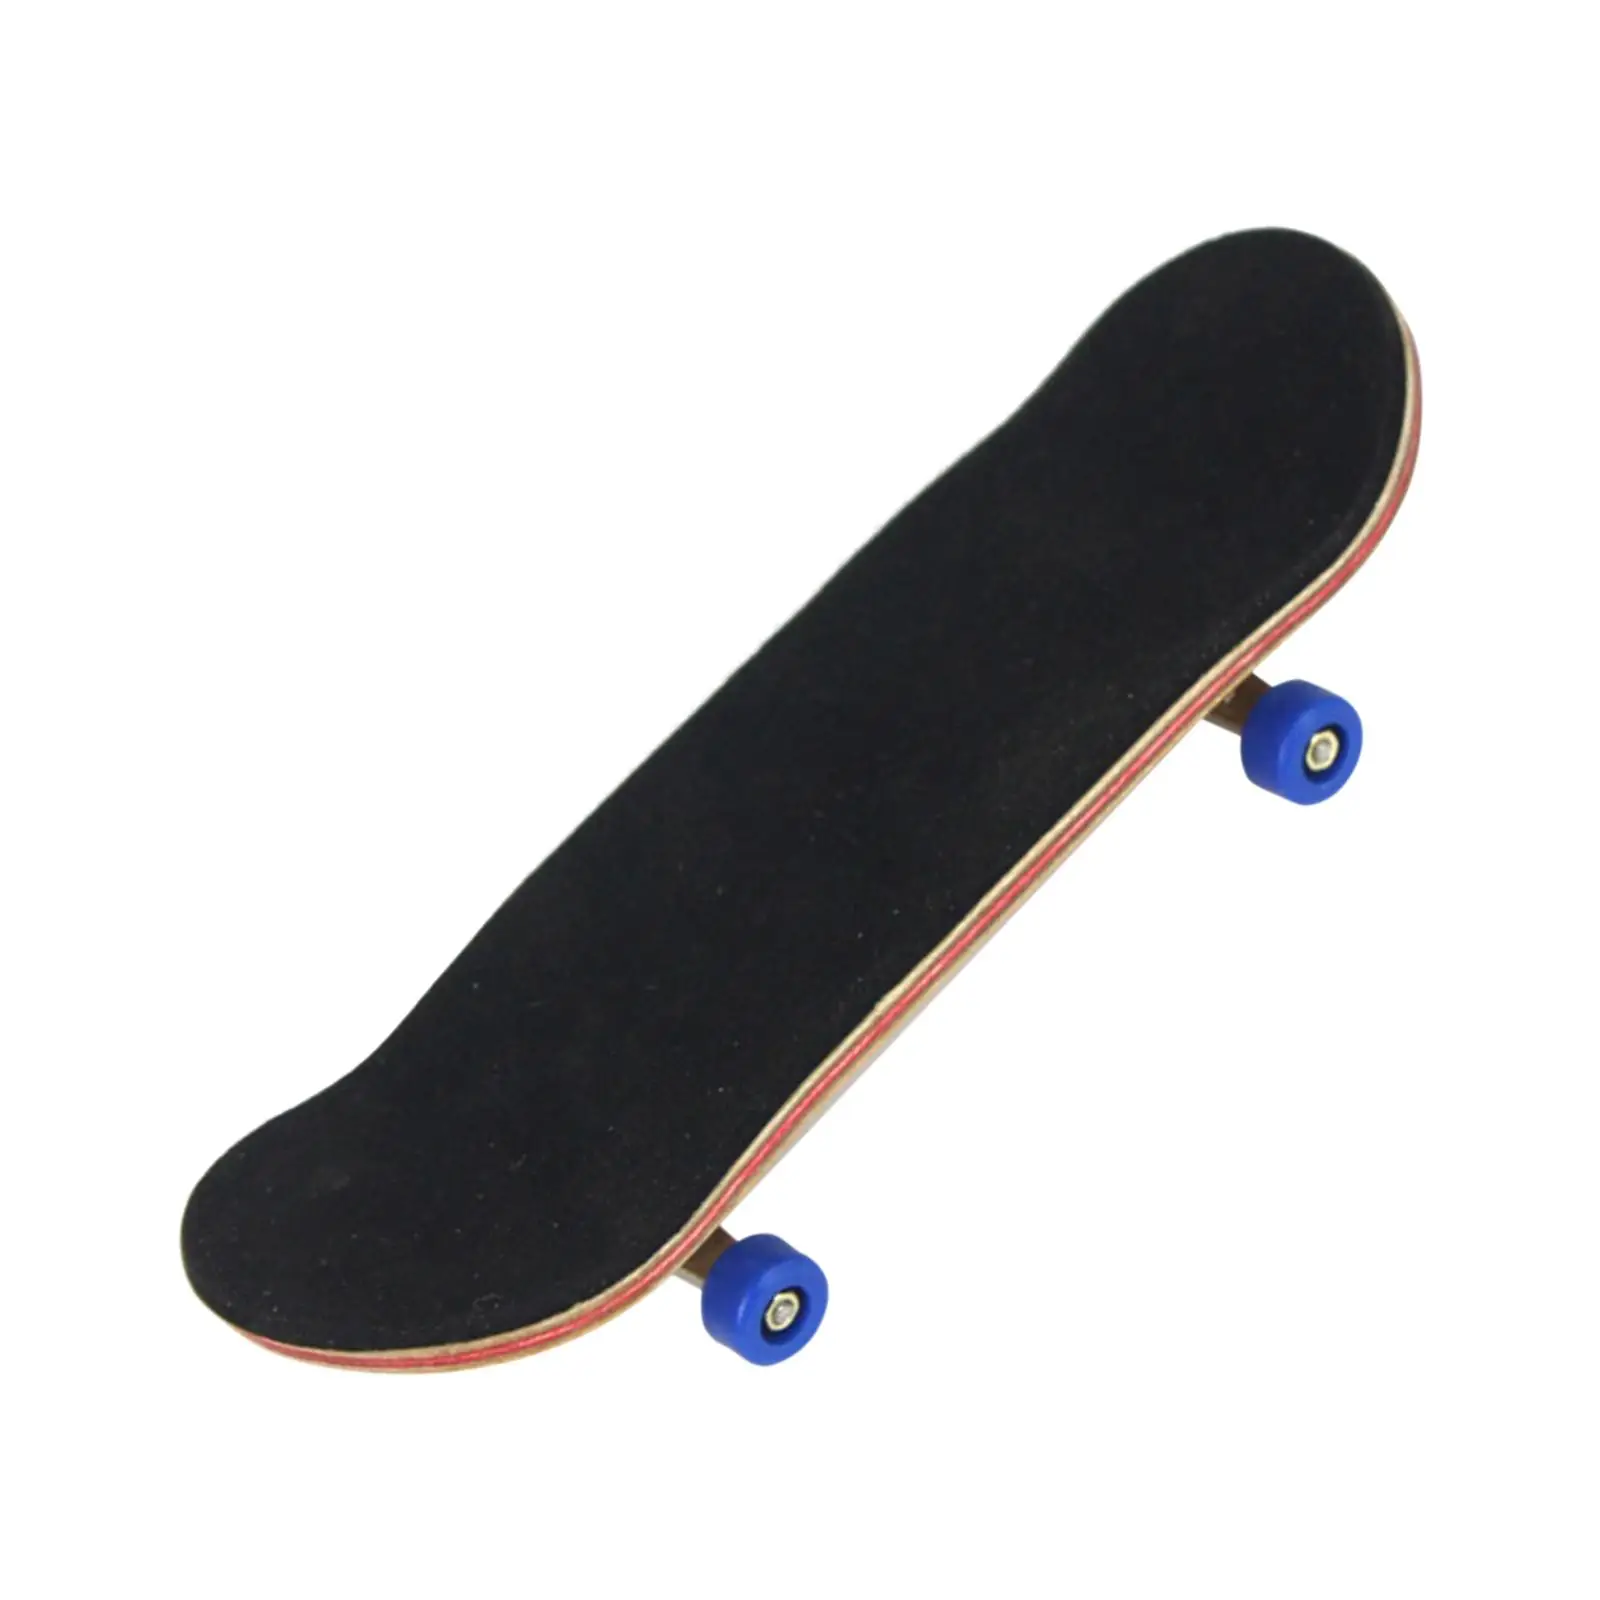 Finger Skateboard Kit - Pad Fingerboard for Kids Children Boy